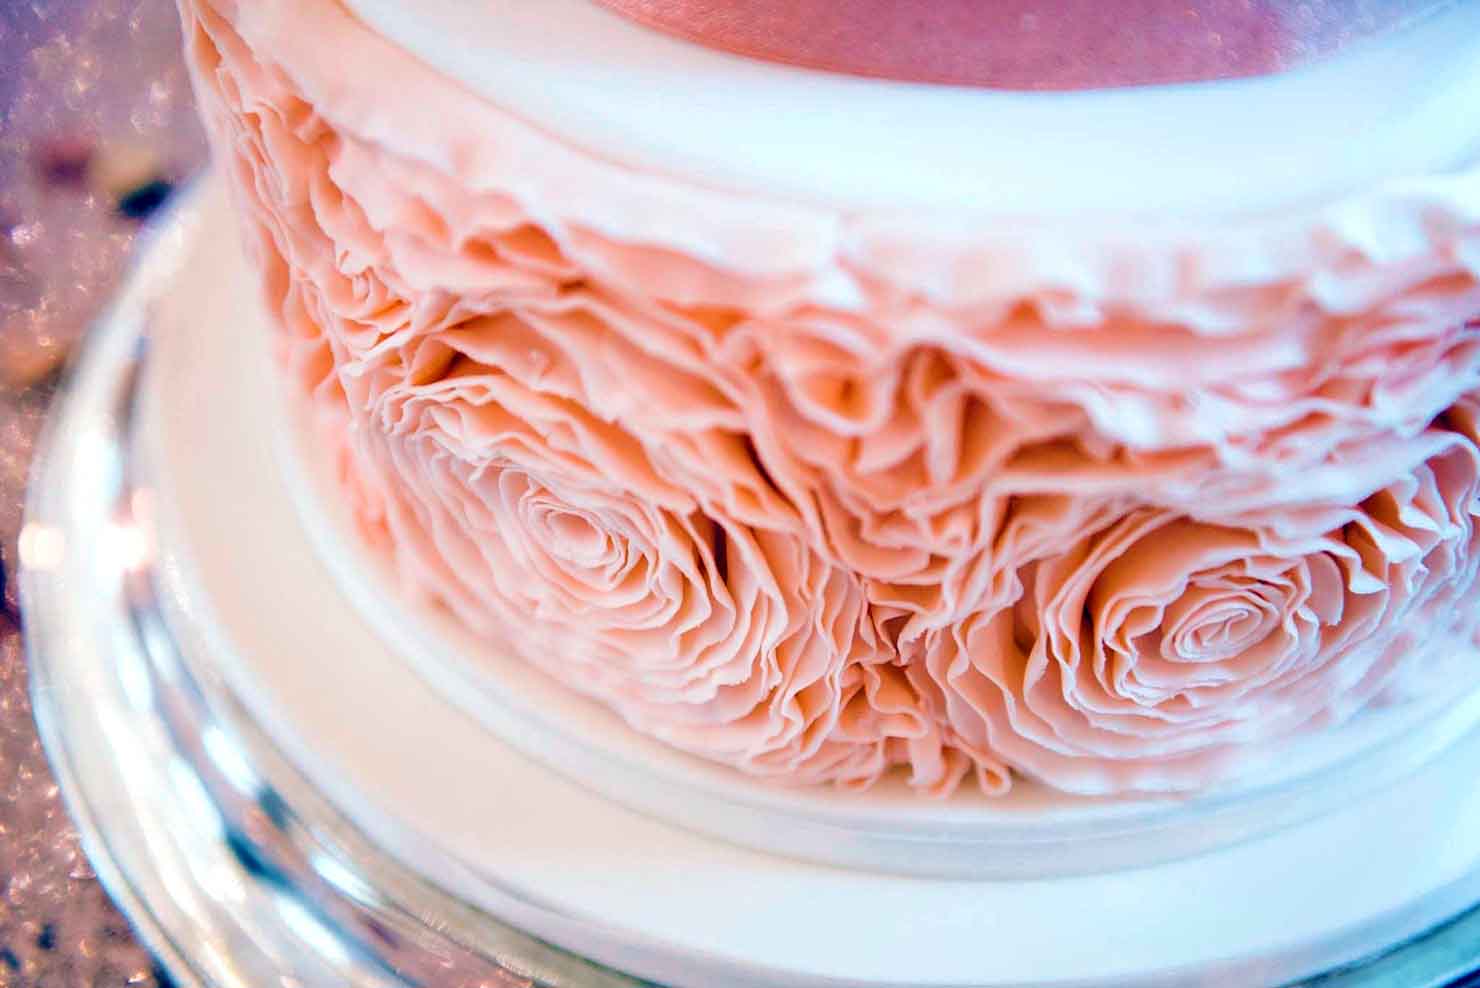 Sugar Flower Decorations On A Wedding Cake